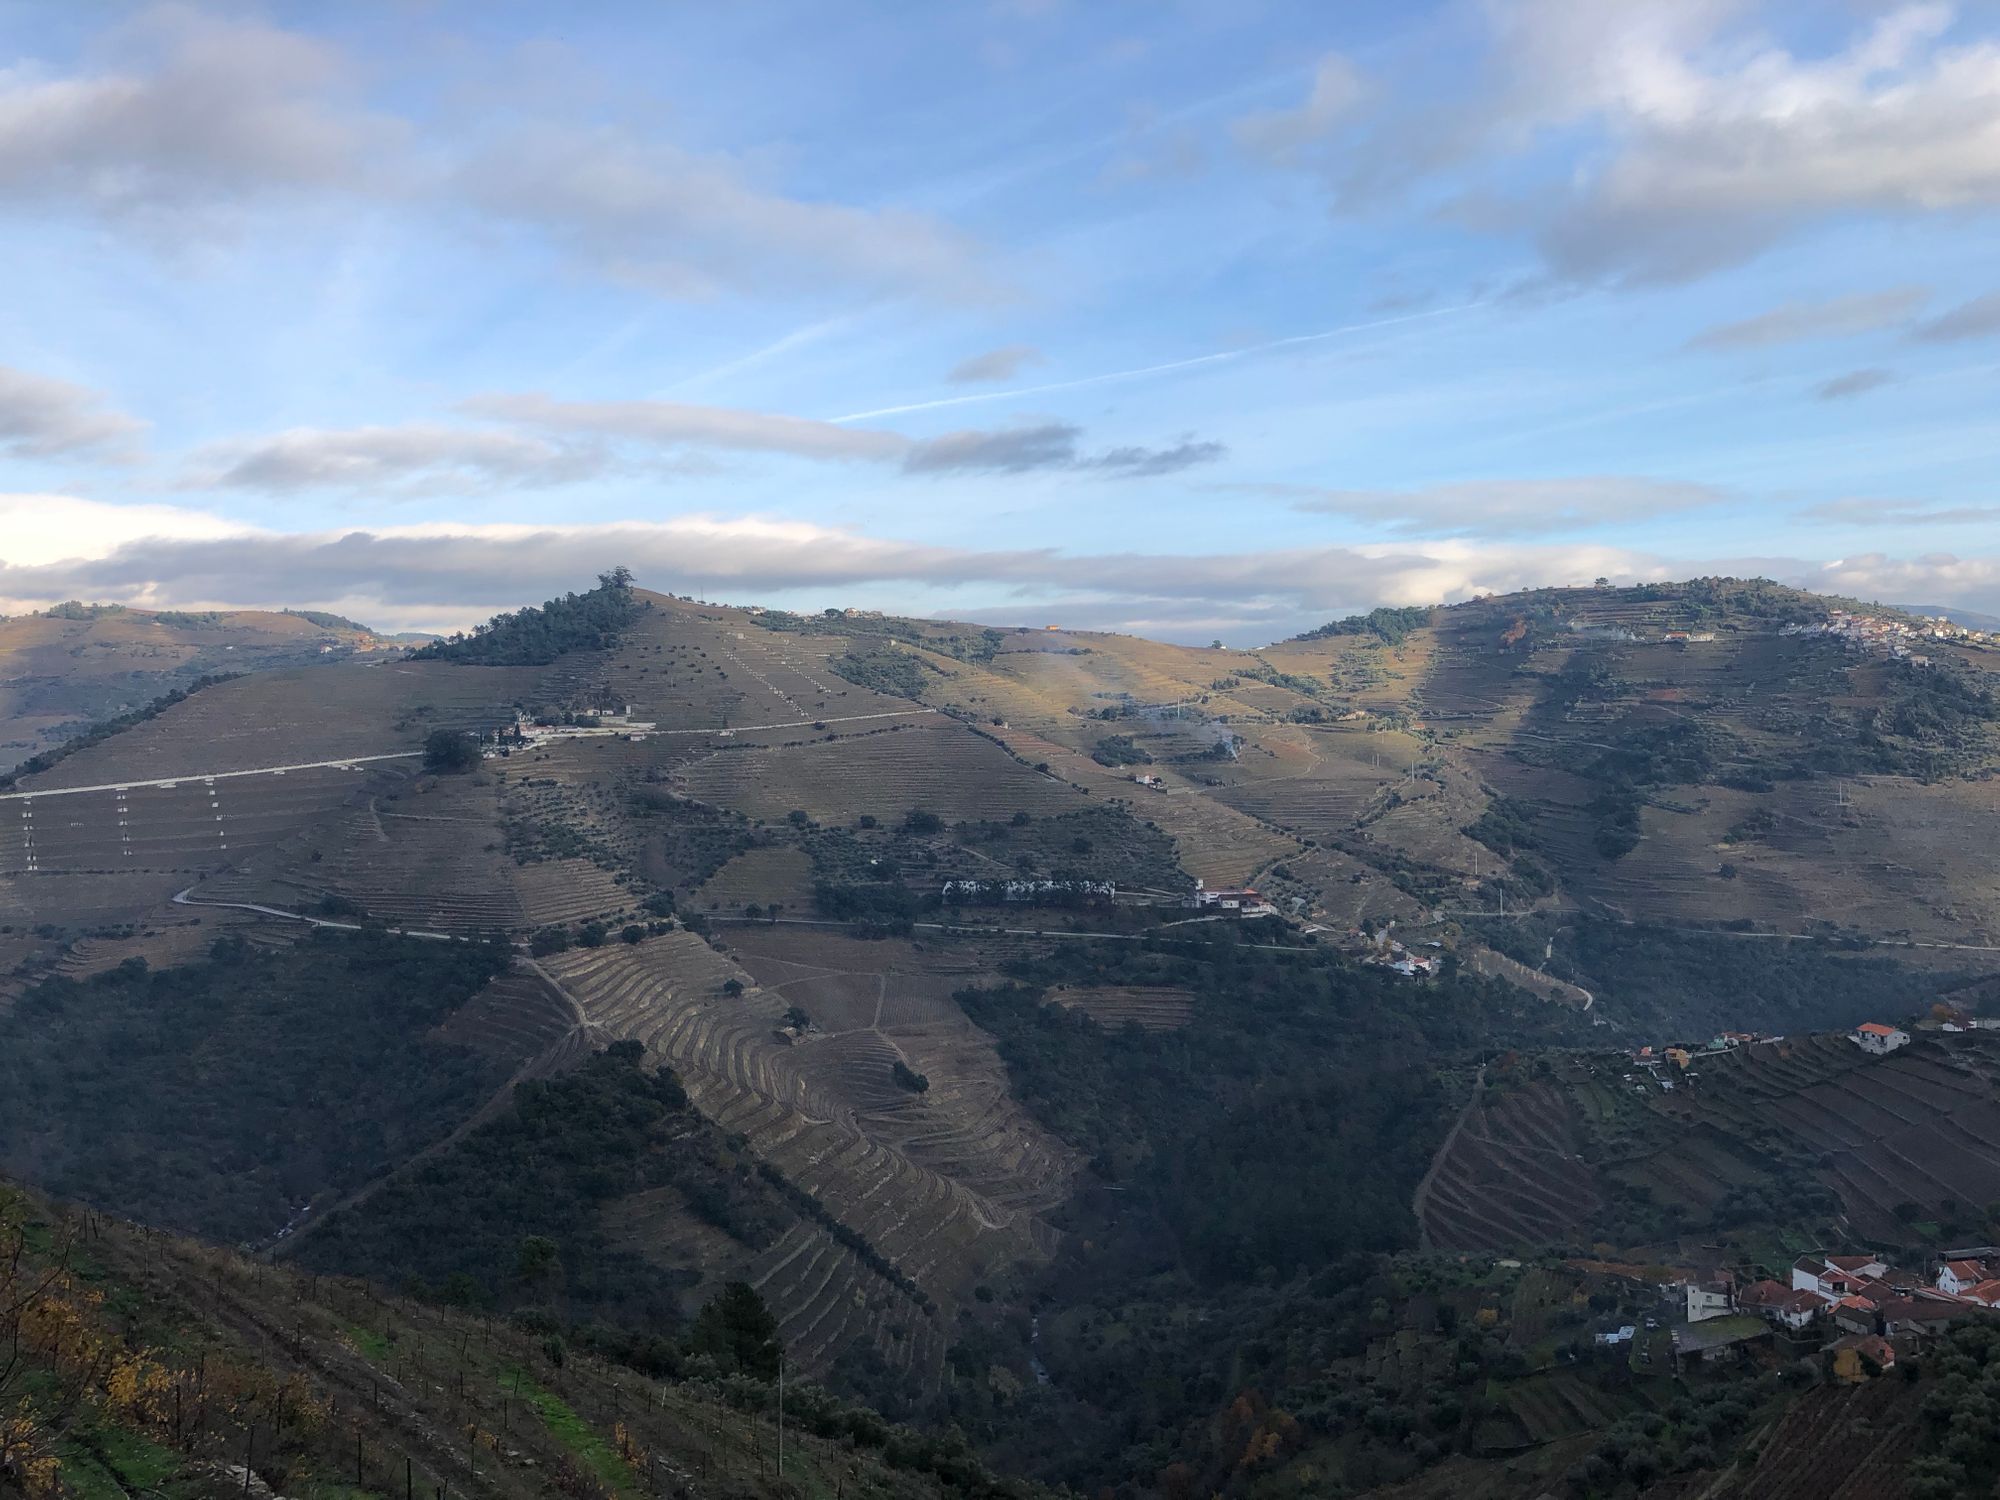 The Douro